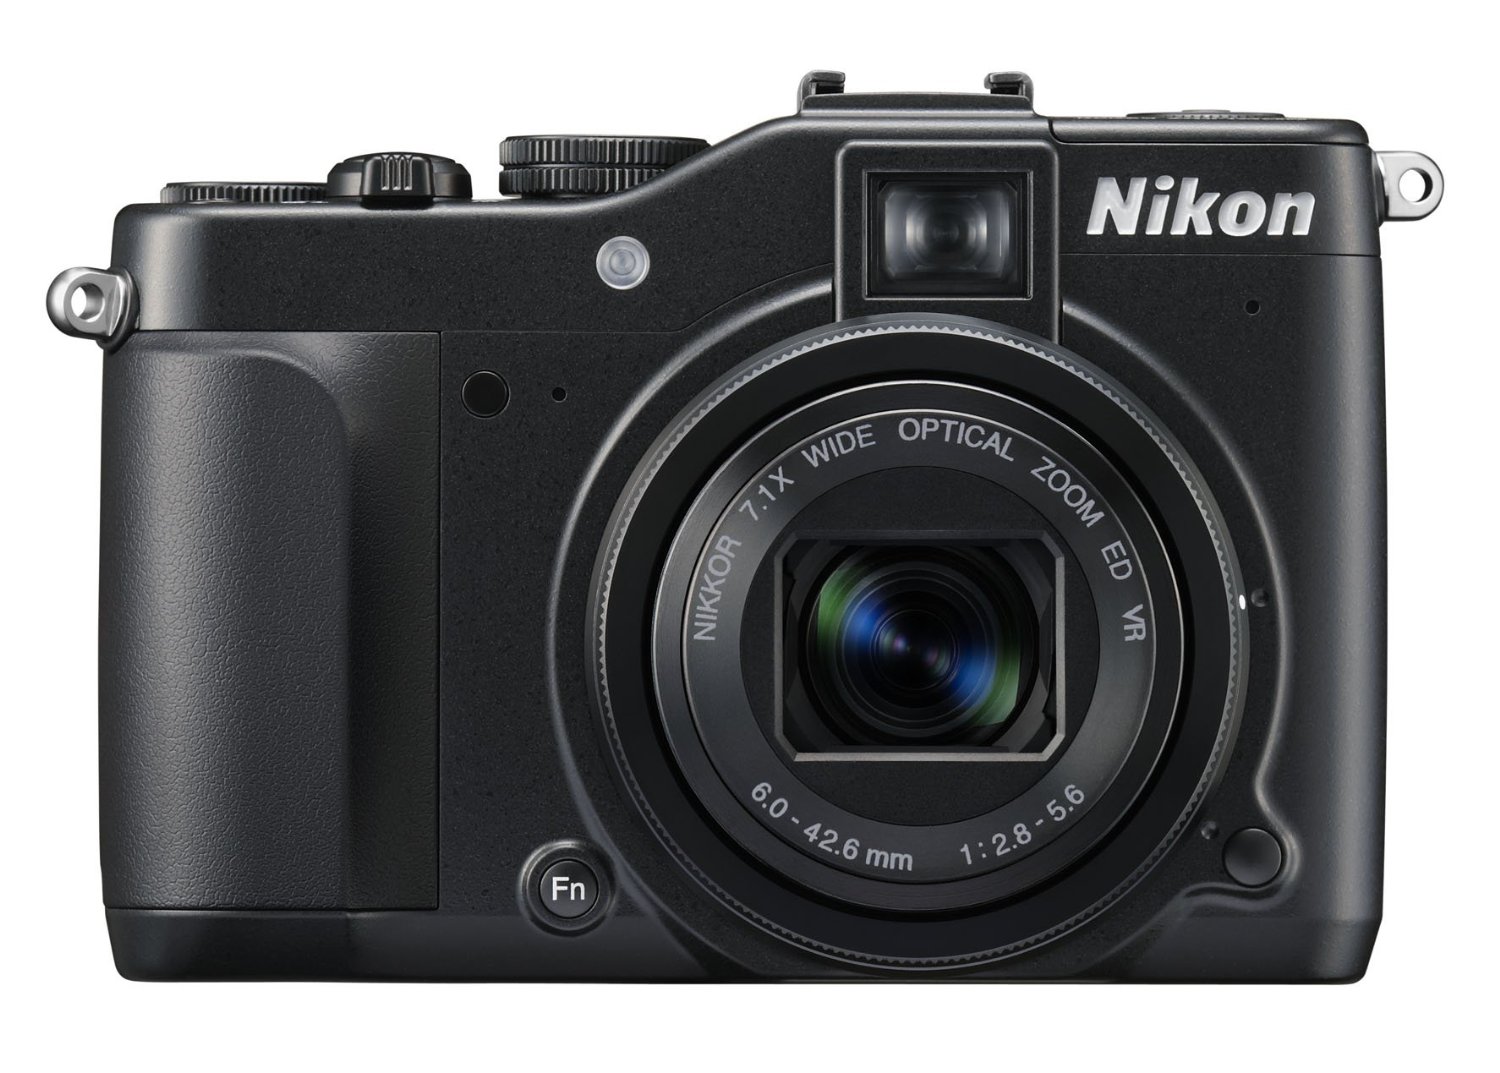 Nikon Coolpix P7000 Digital Camera